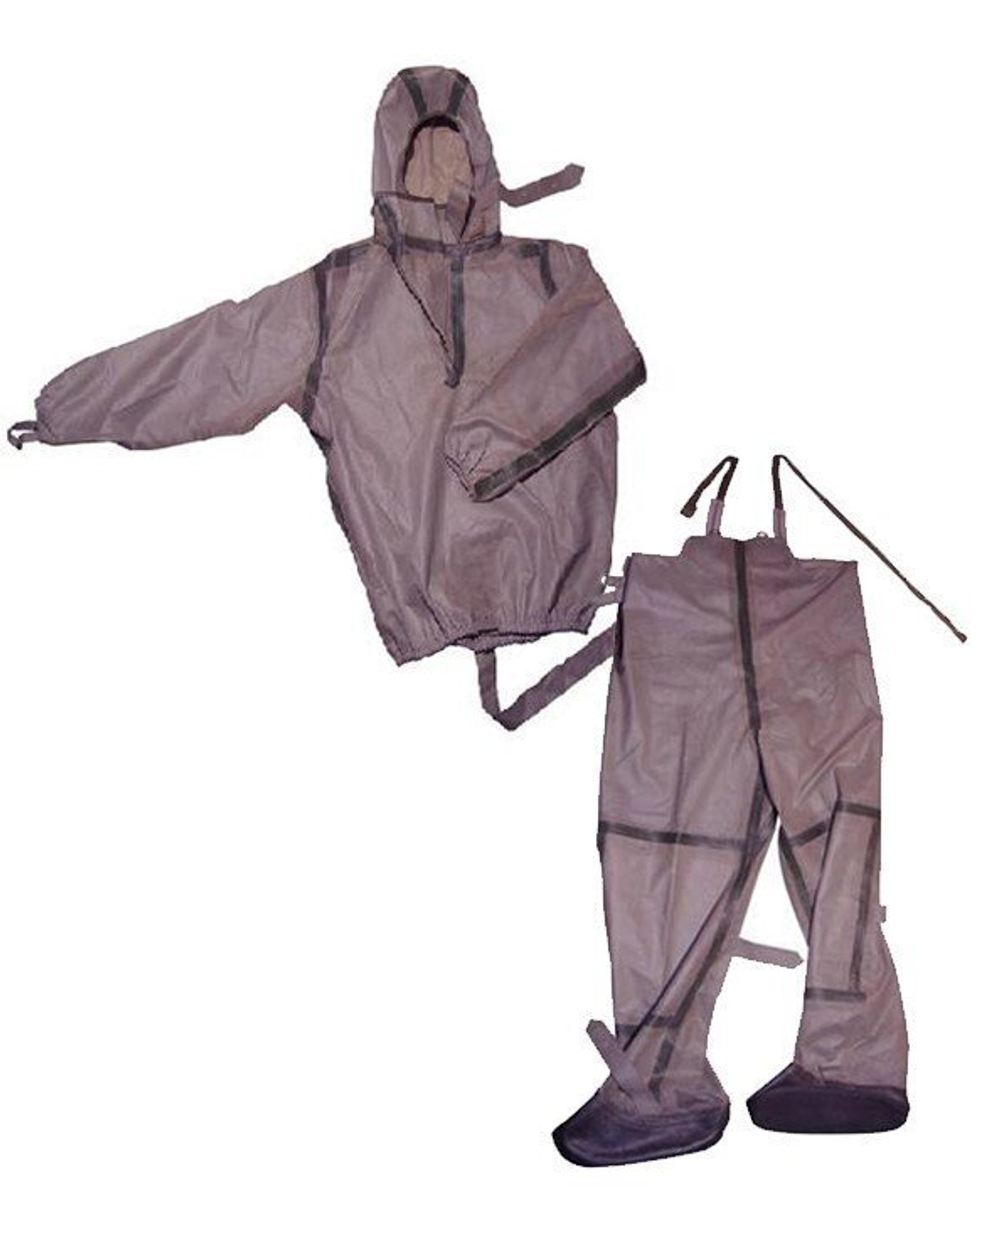 Защитный костюм Л-1 общевойсковой, рост 2 (с хранения)